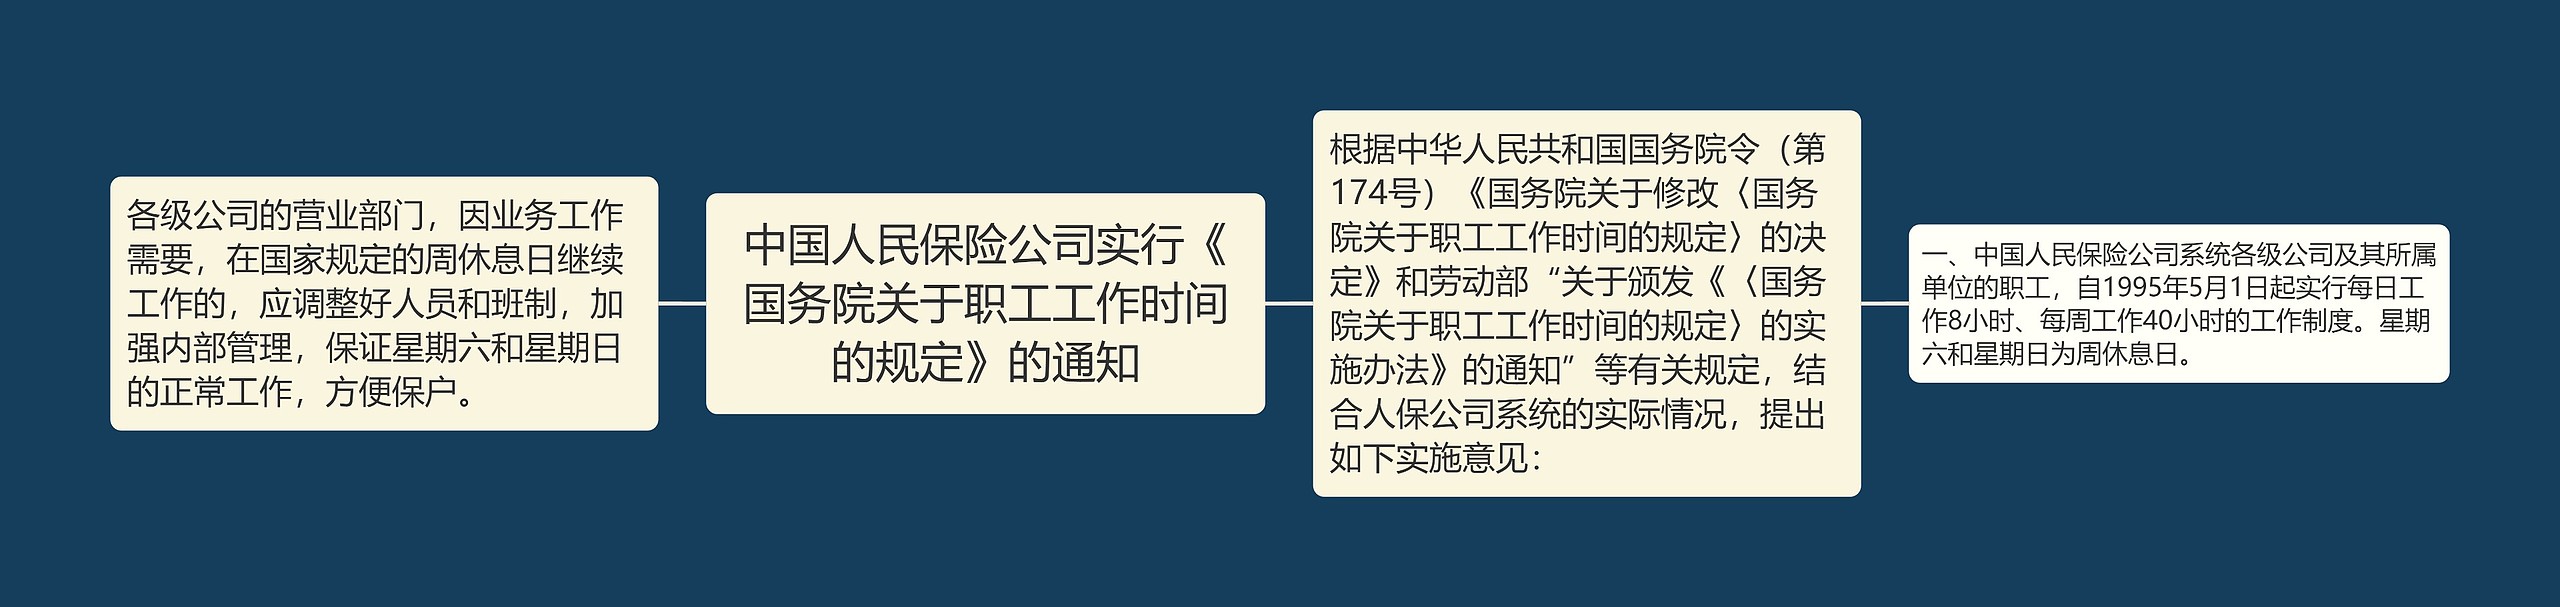 中国人民保险公司实行《国务院关于职工工作时间的规定》的通知